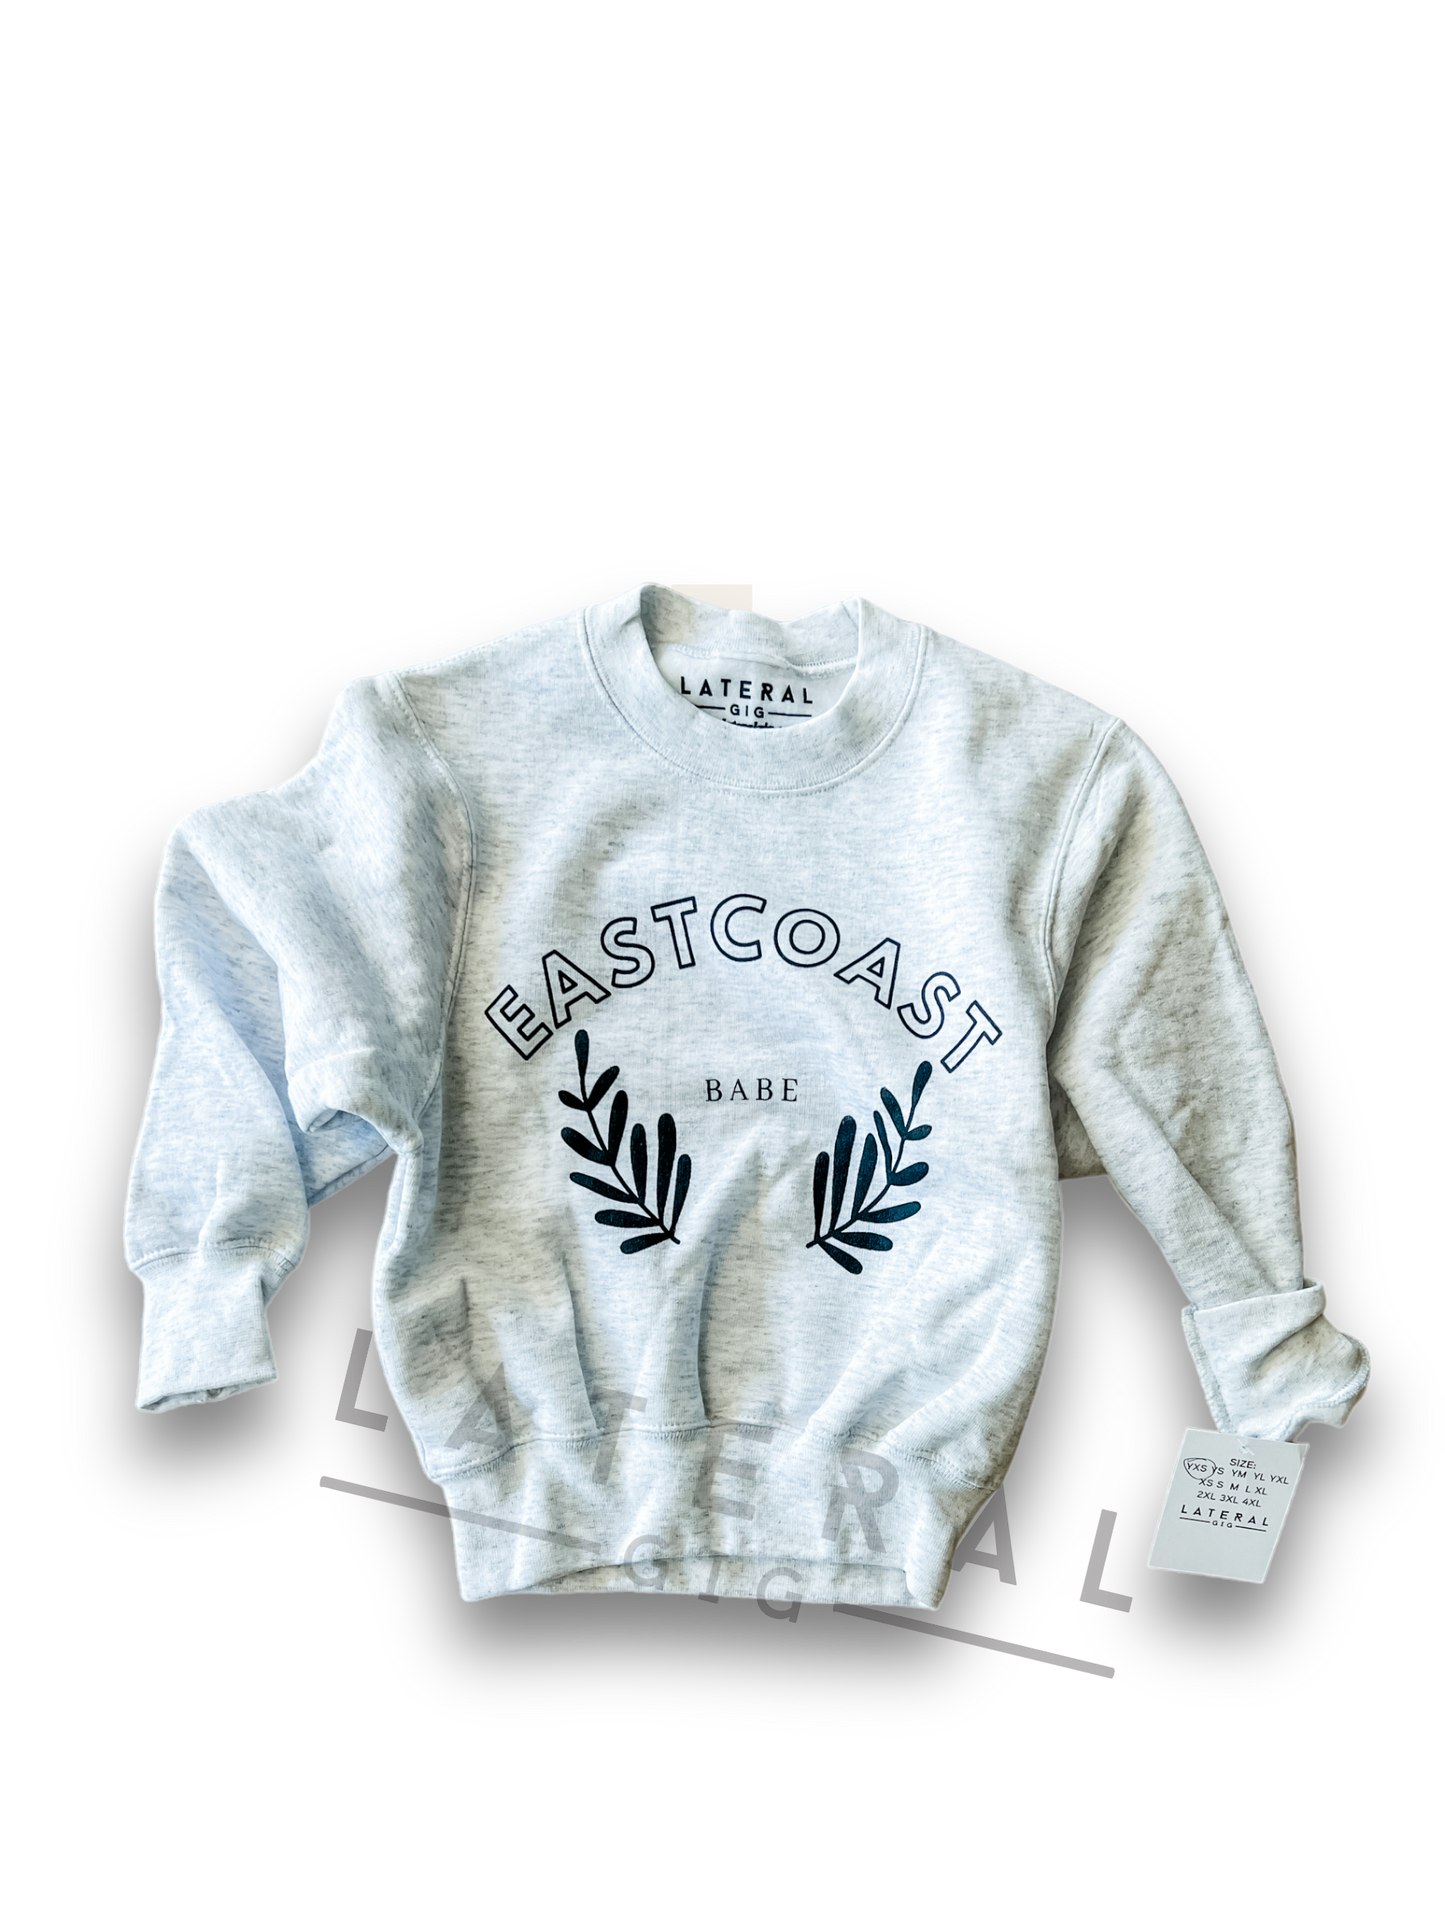 East Coast Babe Youth Crewneck Sweatshirt